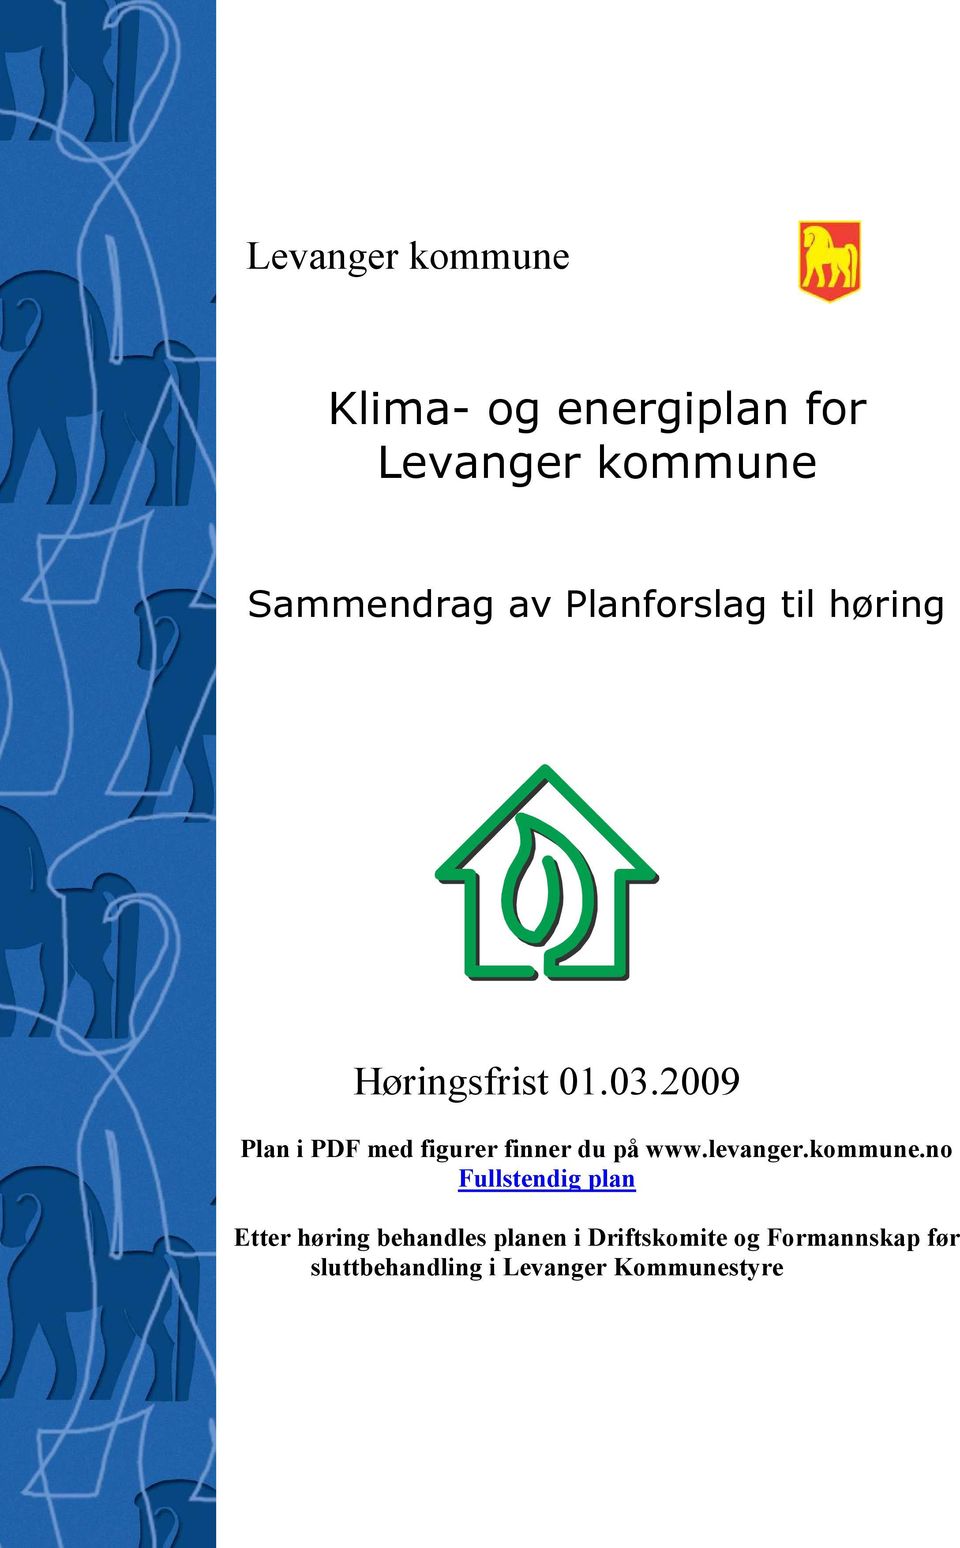 2009 Plan i PDF med figurer finner du på www.levanger.kommune.